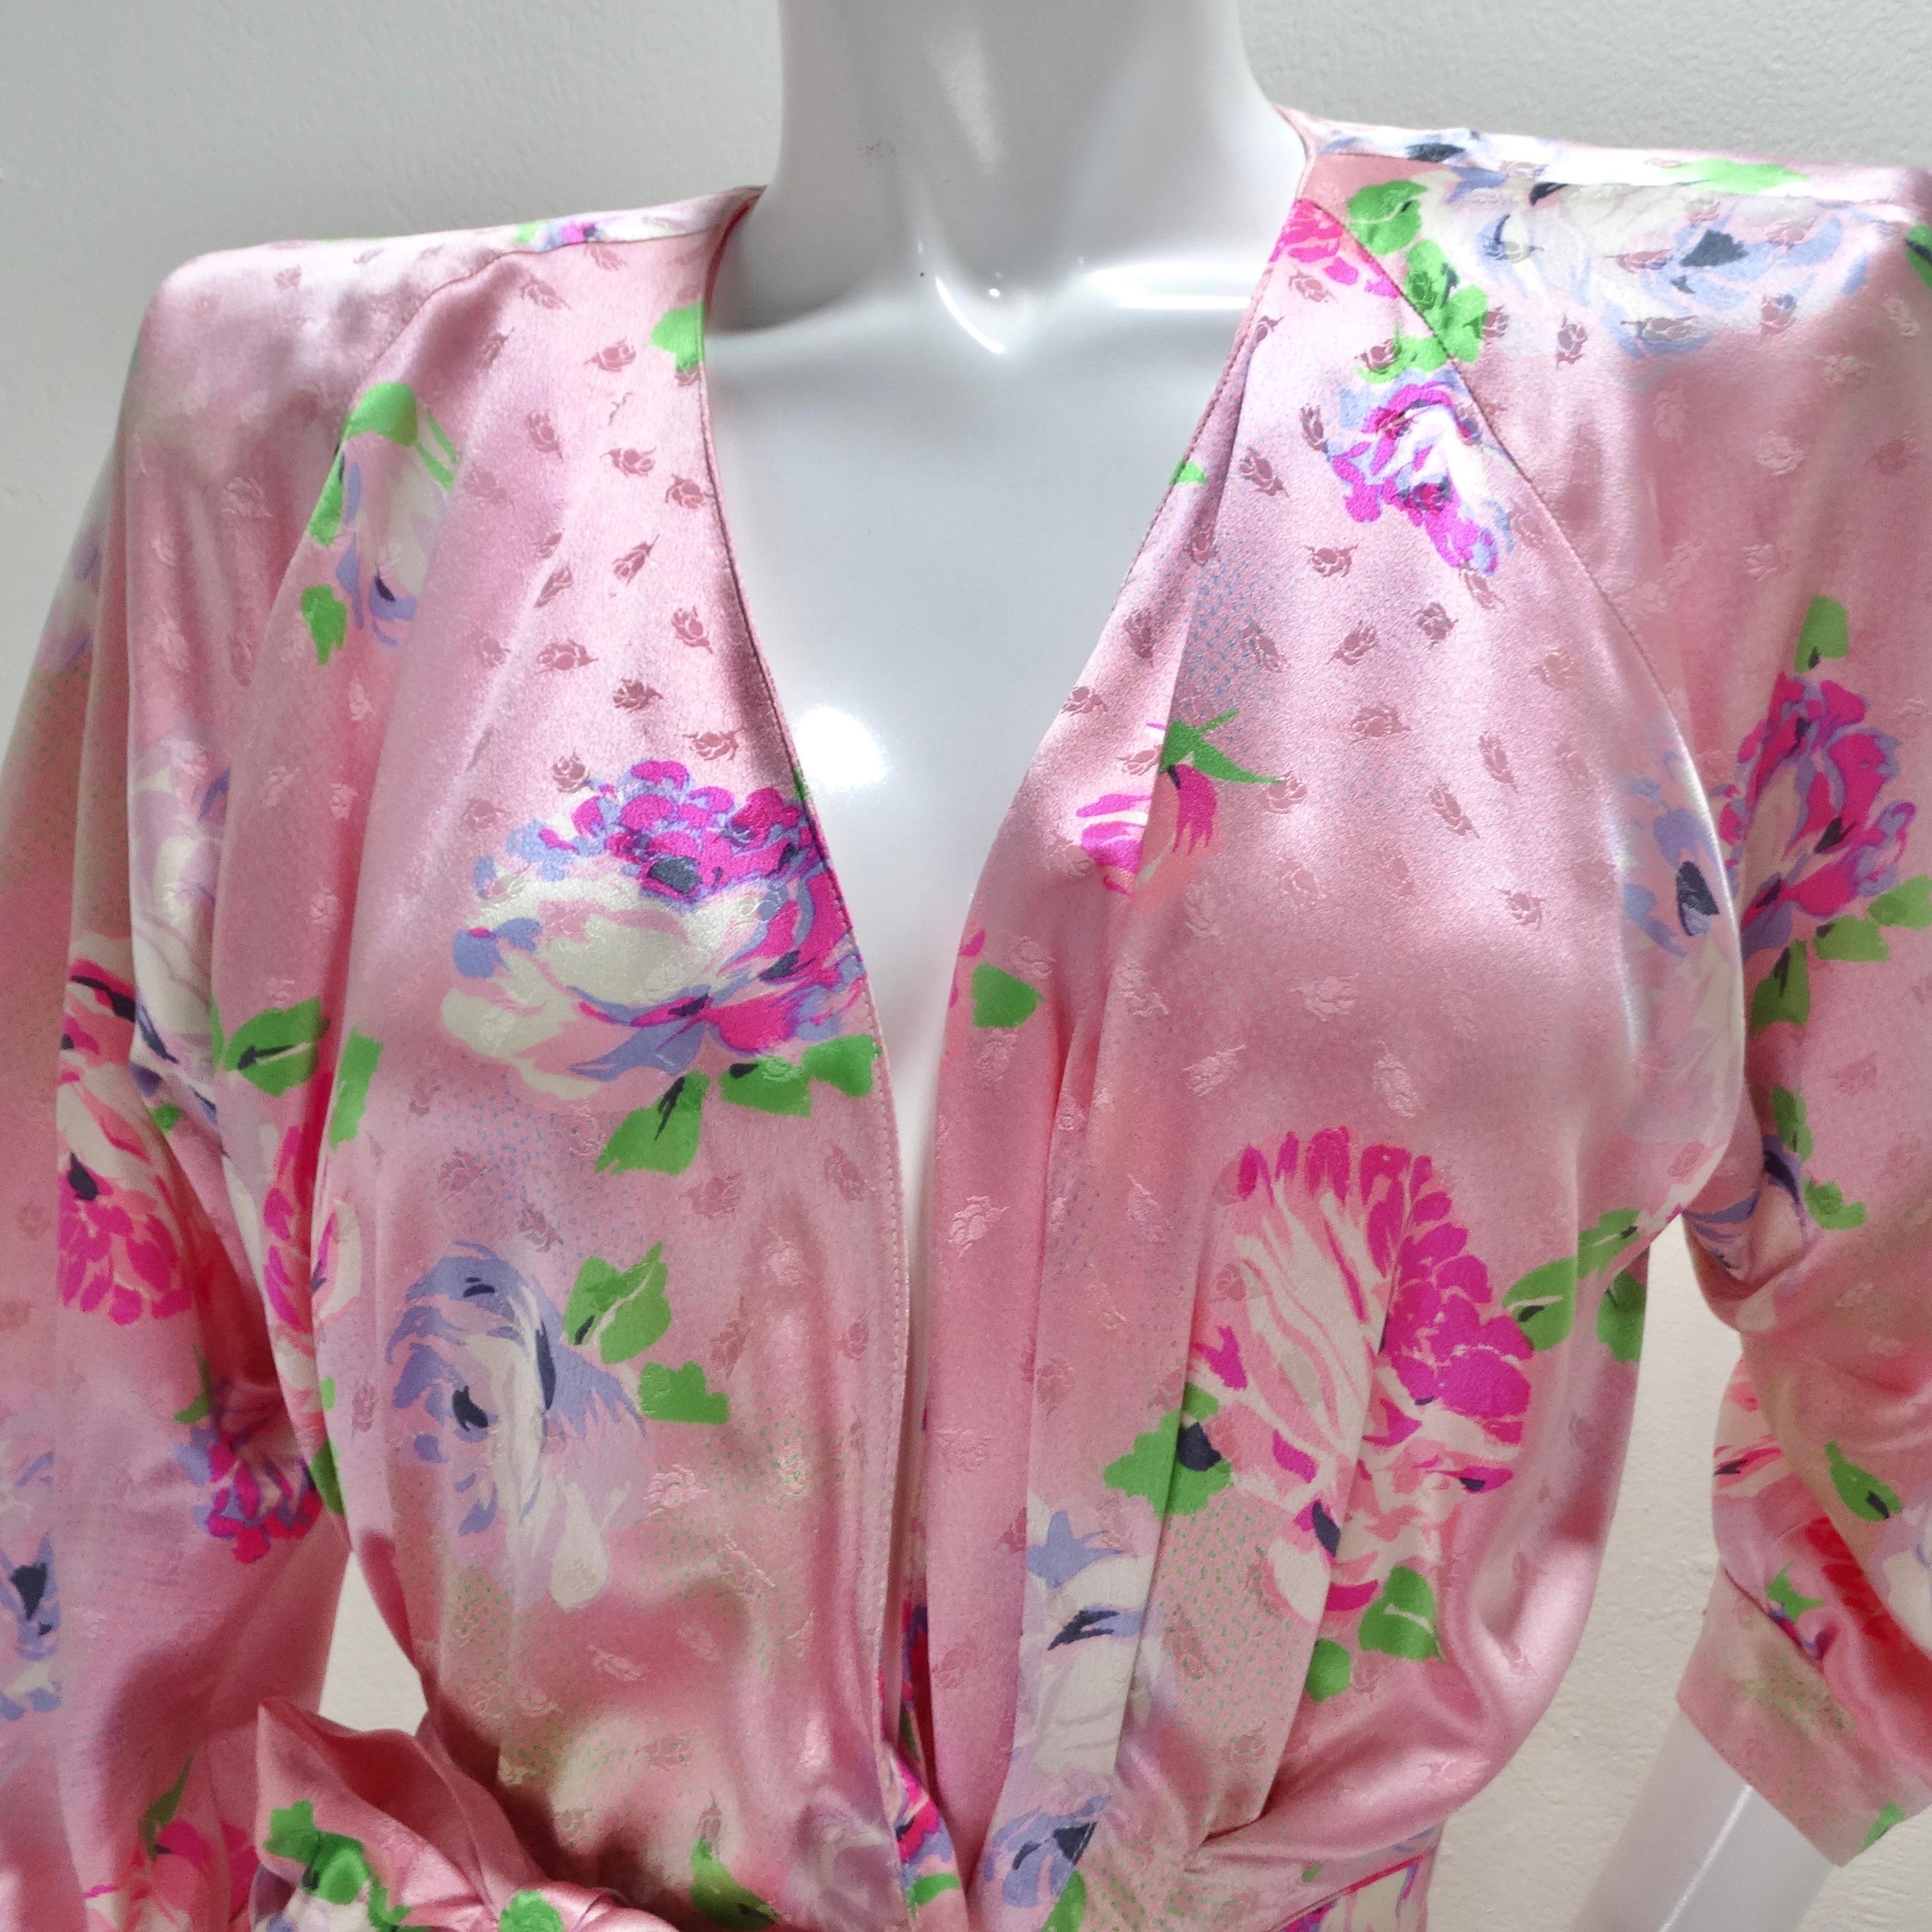 Brown Emanuel Ungaro 1980s Pink Floral Wrap Dress For Sale